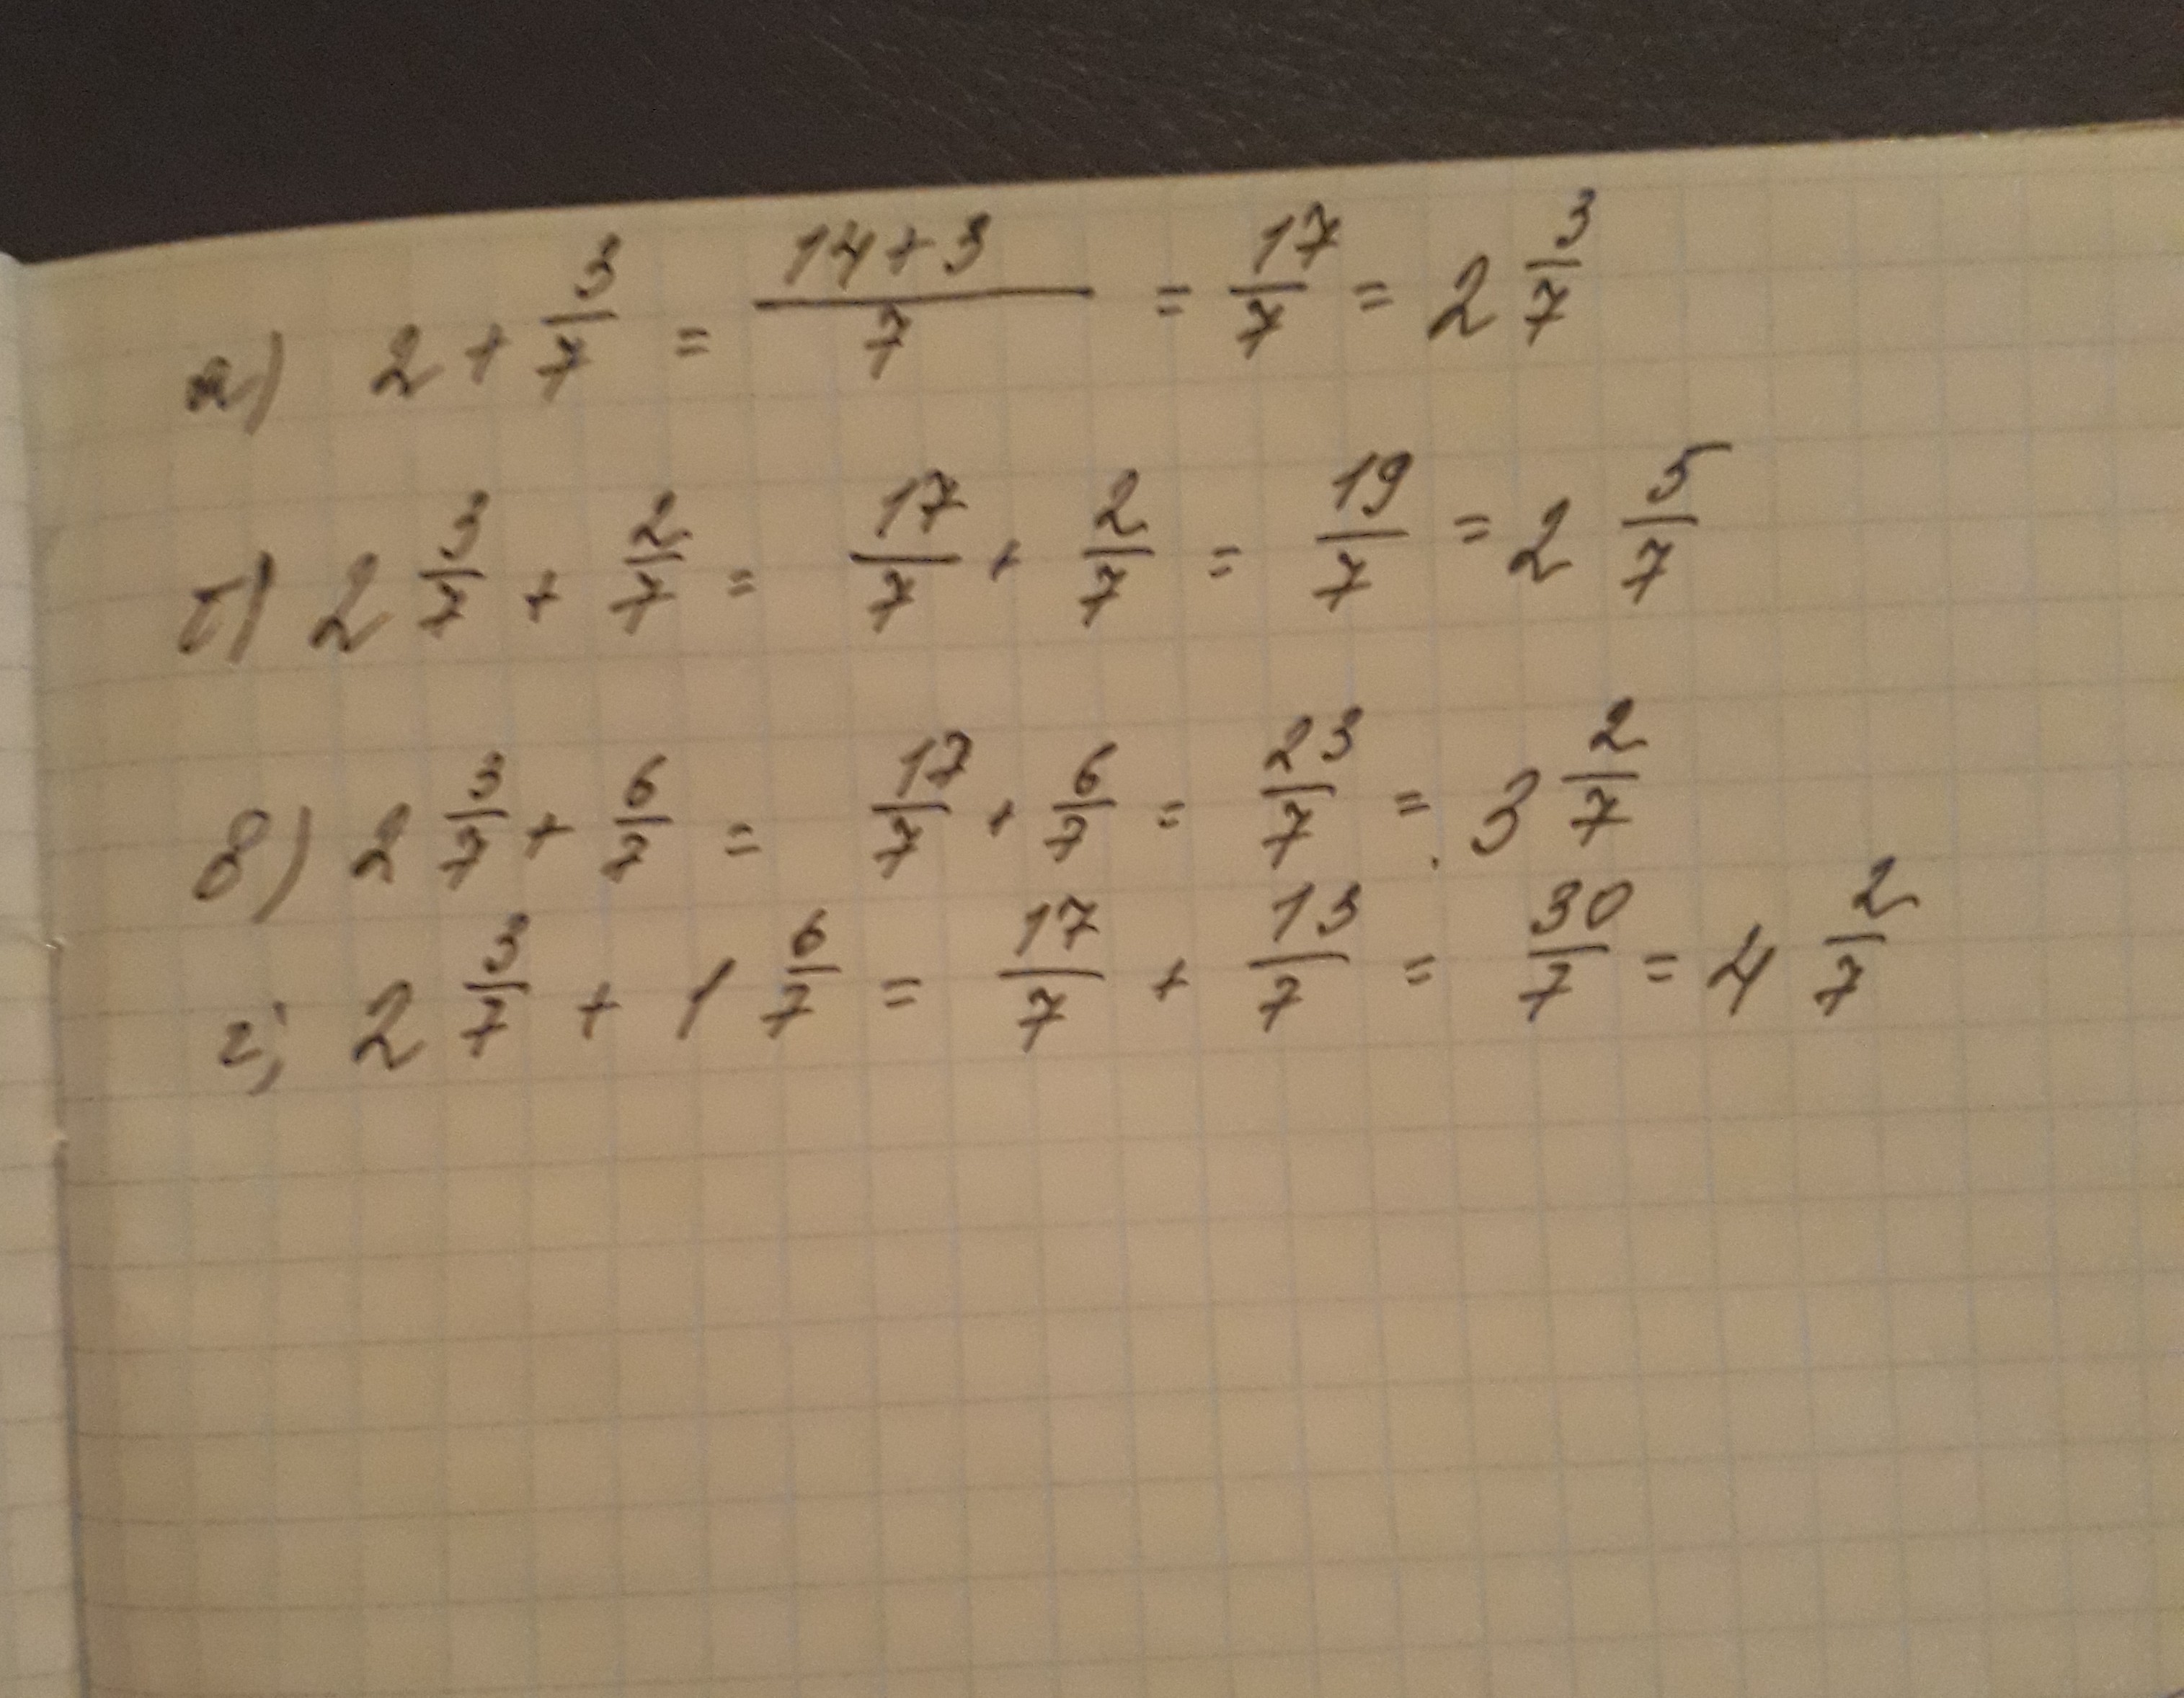 2.7 3.3. Вычислите 2/7. Вычислите 3/7:2. Вычислите 7 3 + 7 2. (−2)^7⋅6 Вычислите.